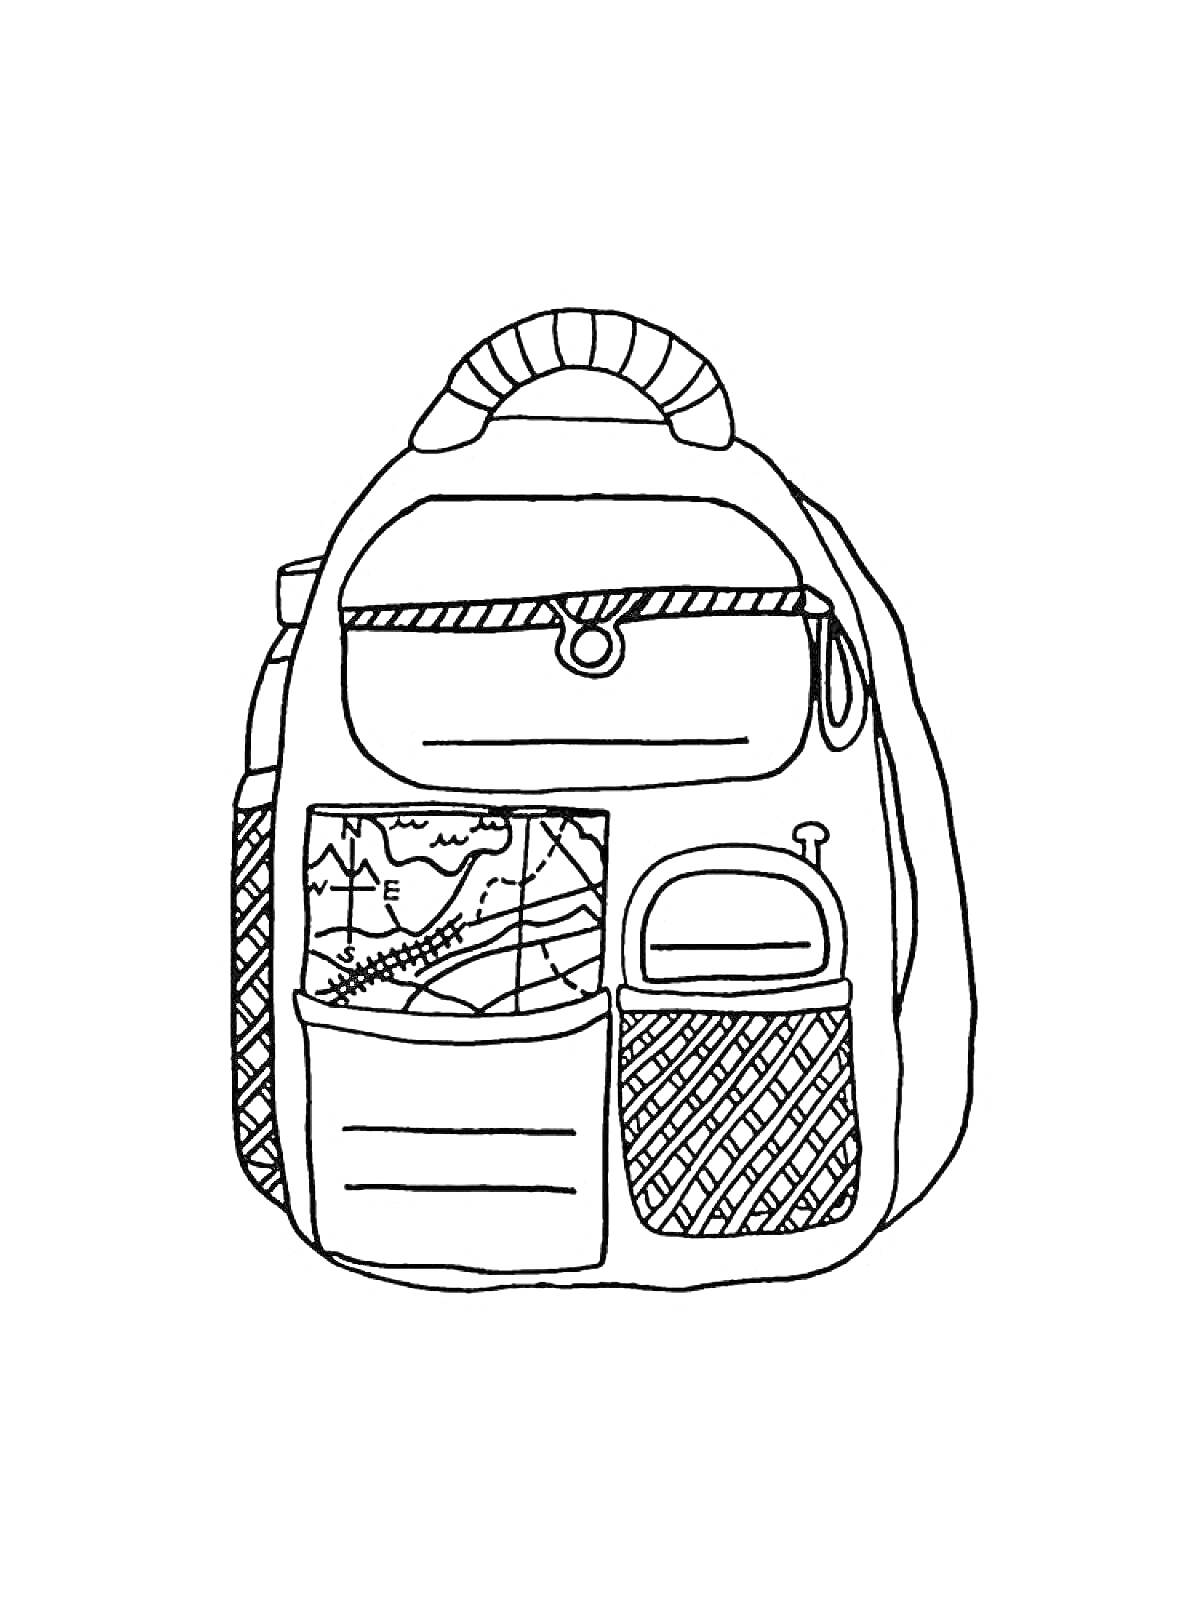 Рюкзак с клапаном, ручкой, тремя внешними карманами и рисунком самолета